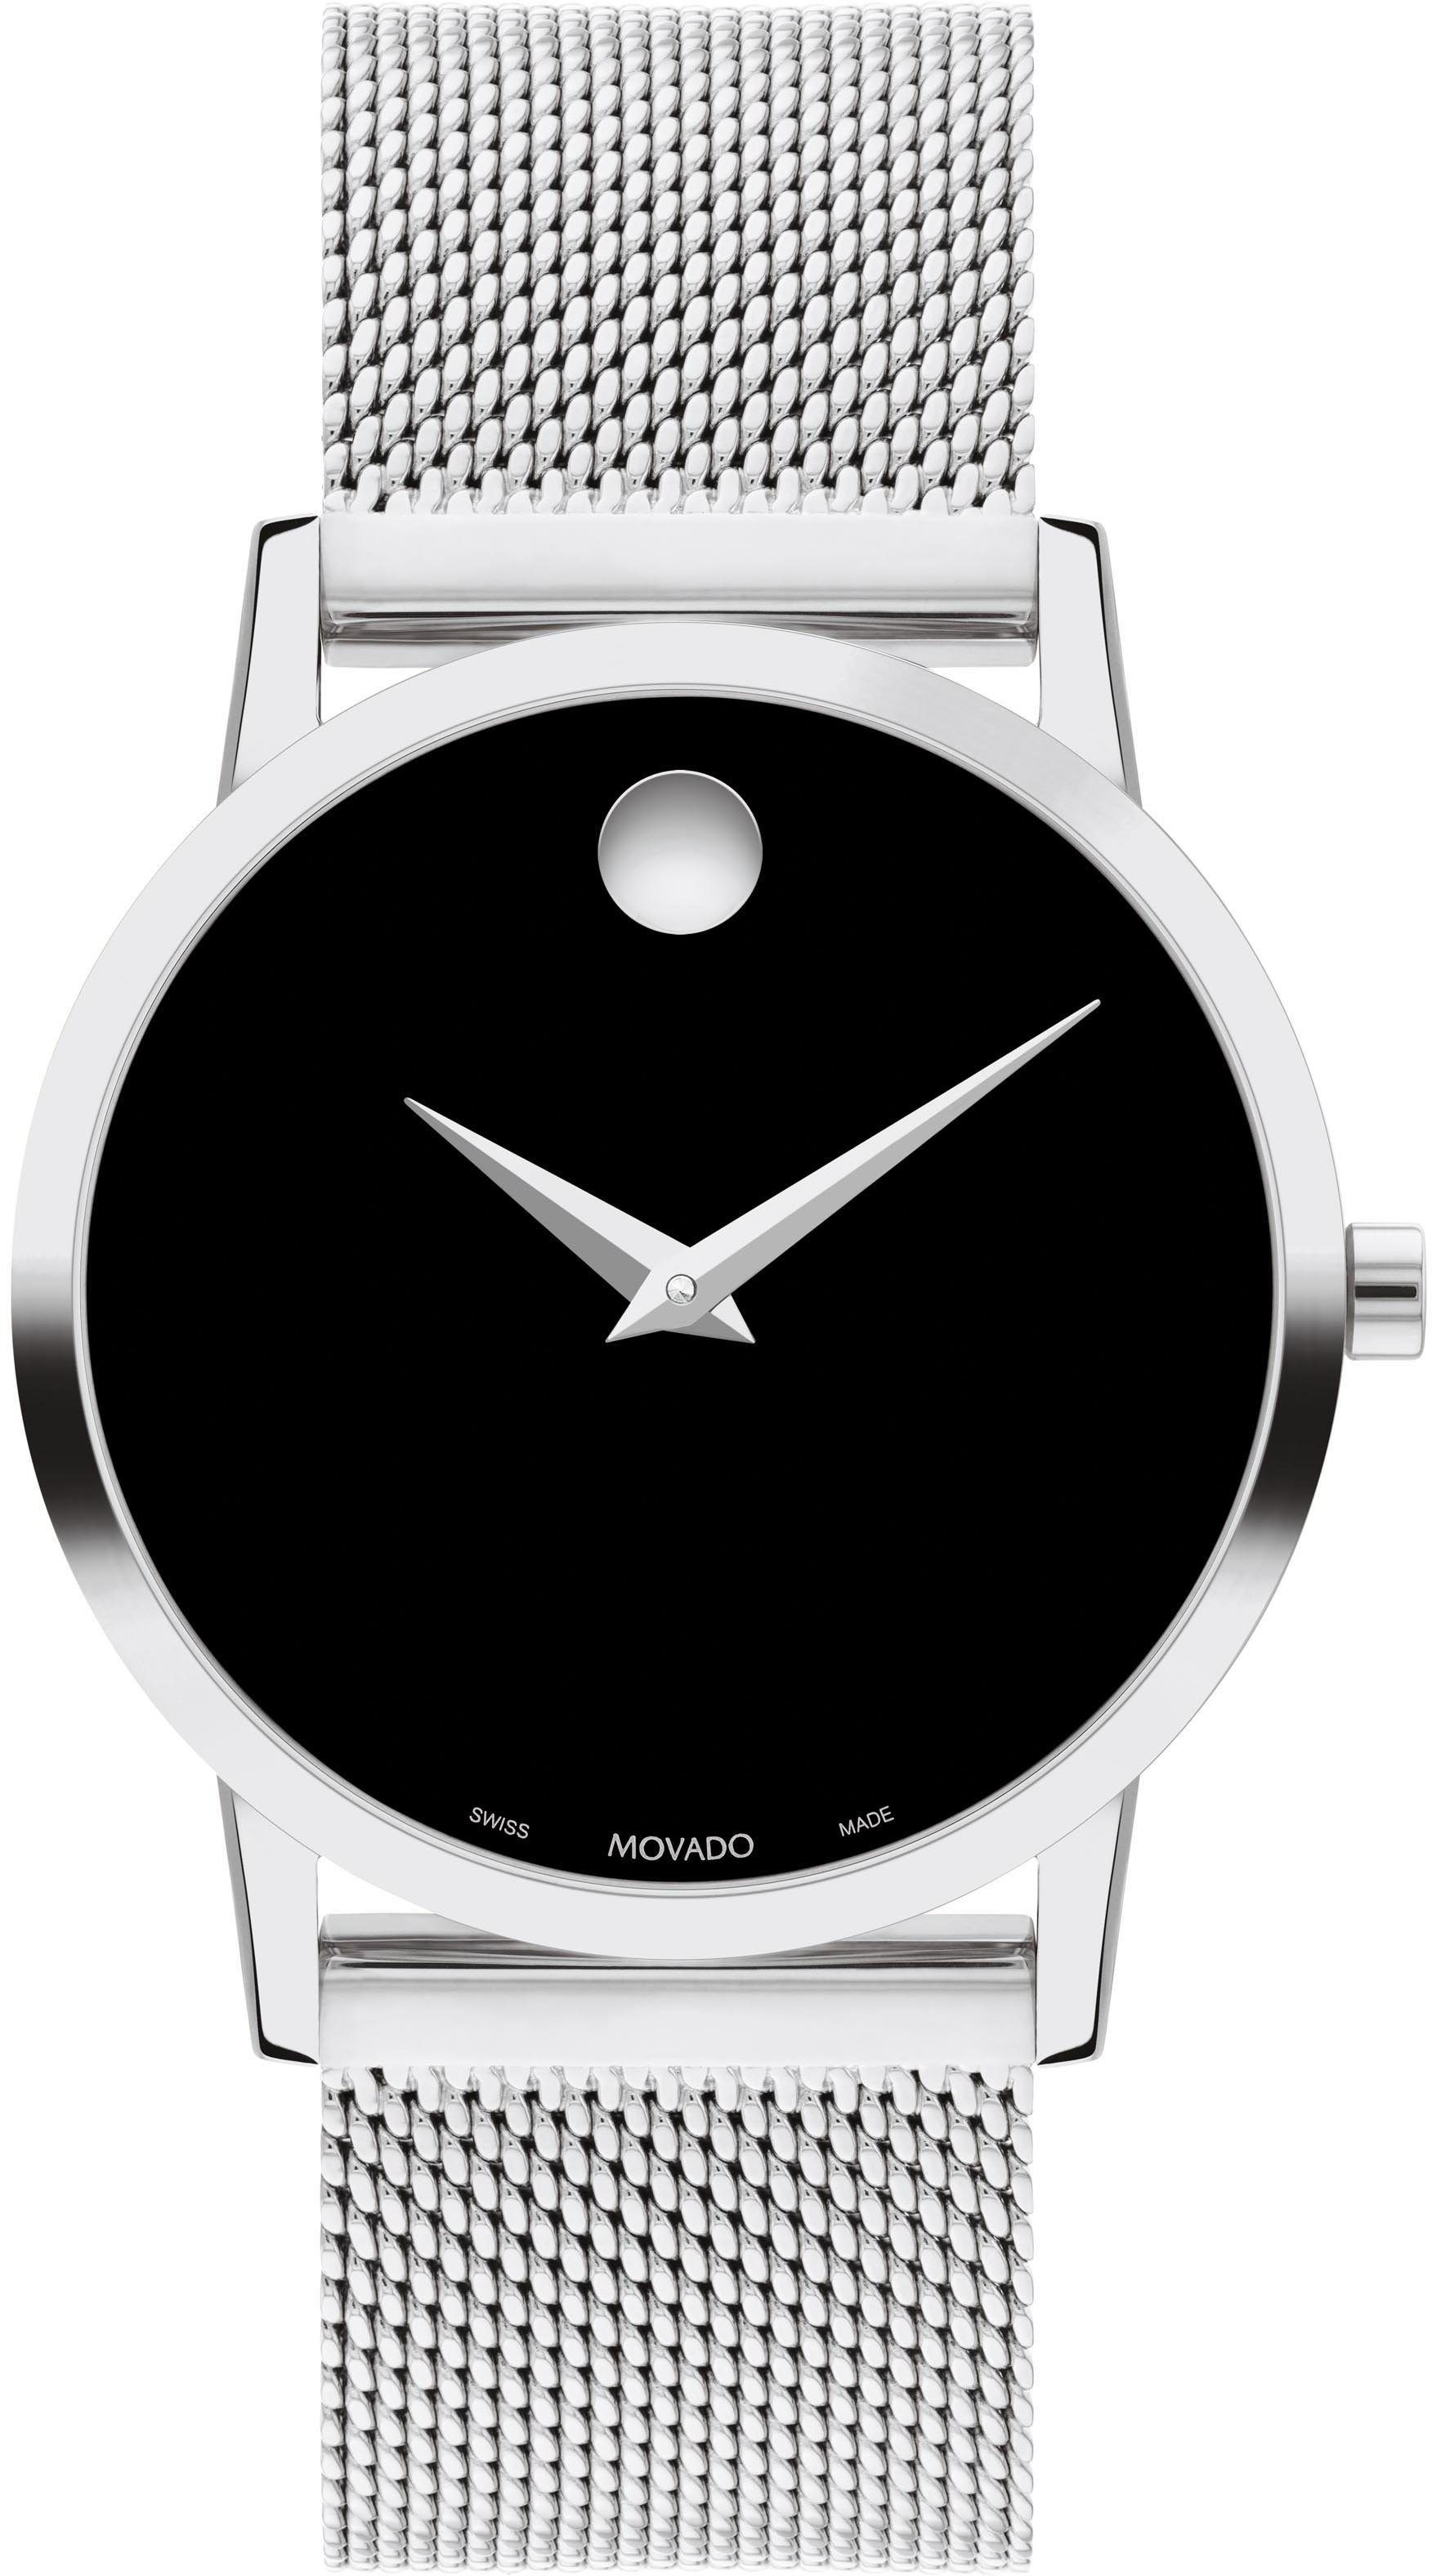 MOVADO Schweizer Uhr MUSEUM Classic 33 mm, 0607646, Quarzuhr, Armbanduhr, Damenuhr, Swiss Made, analog